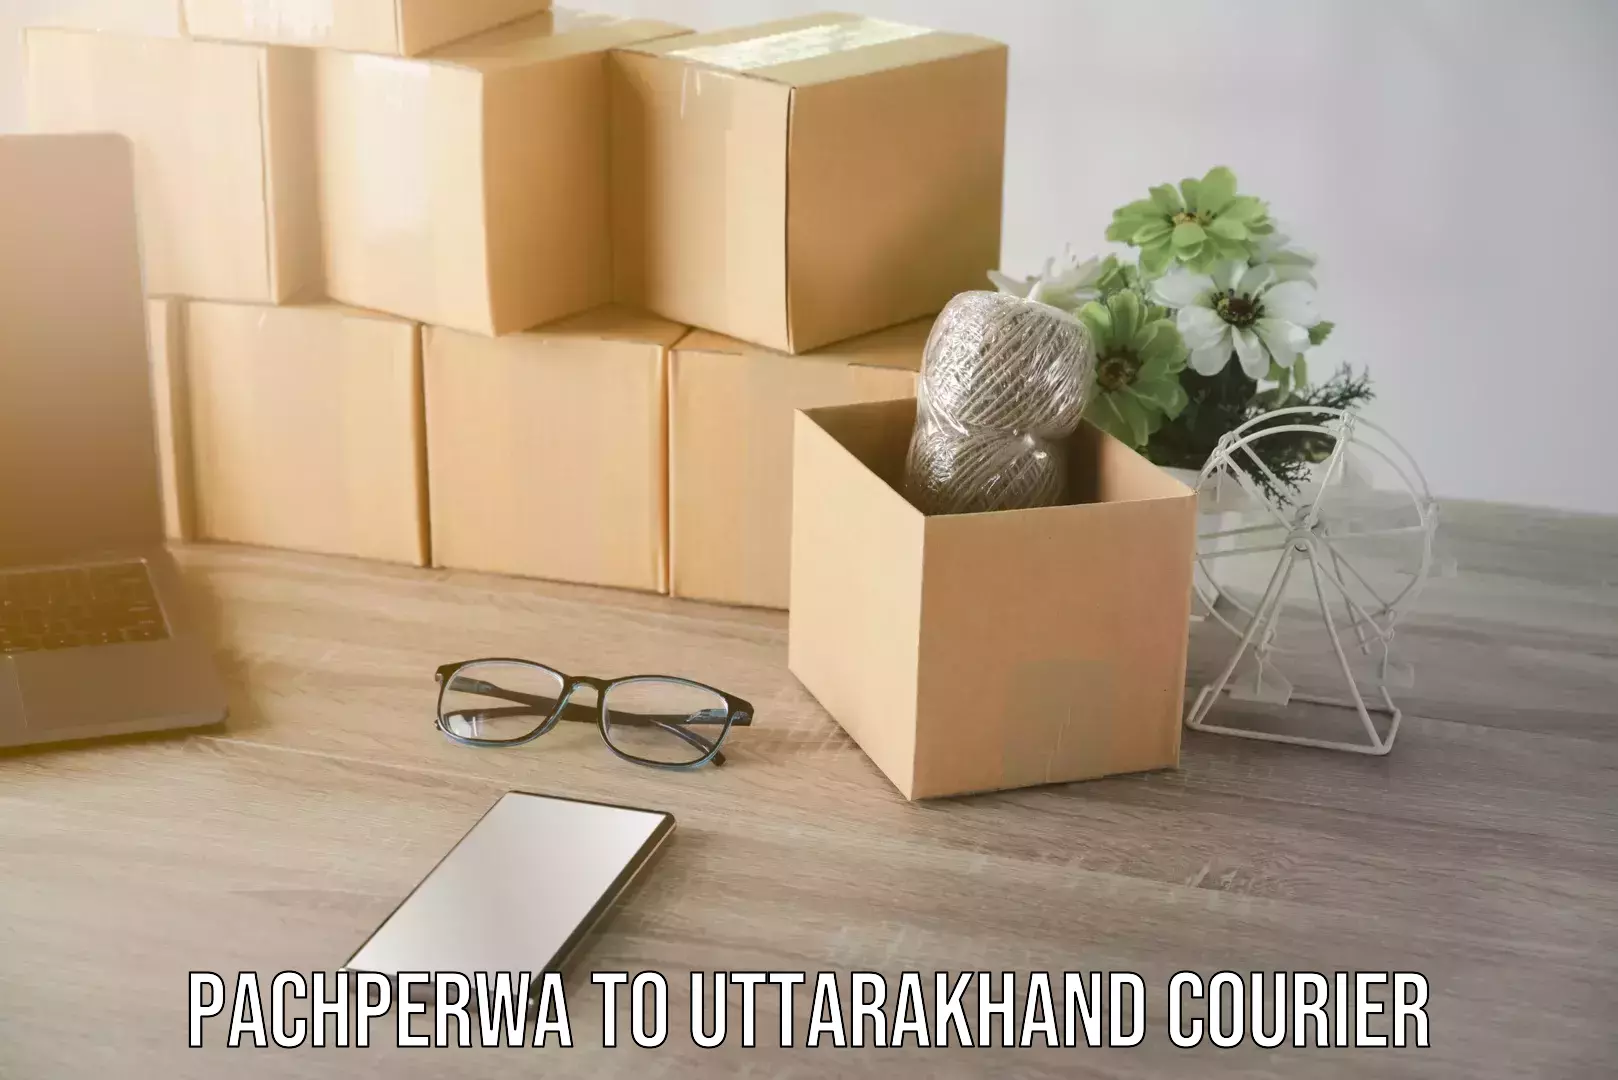 Furniture transport experts Pachperwa to Uttarakhand